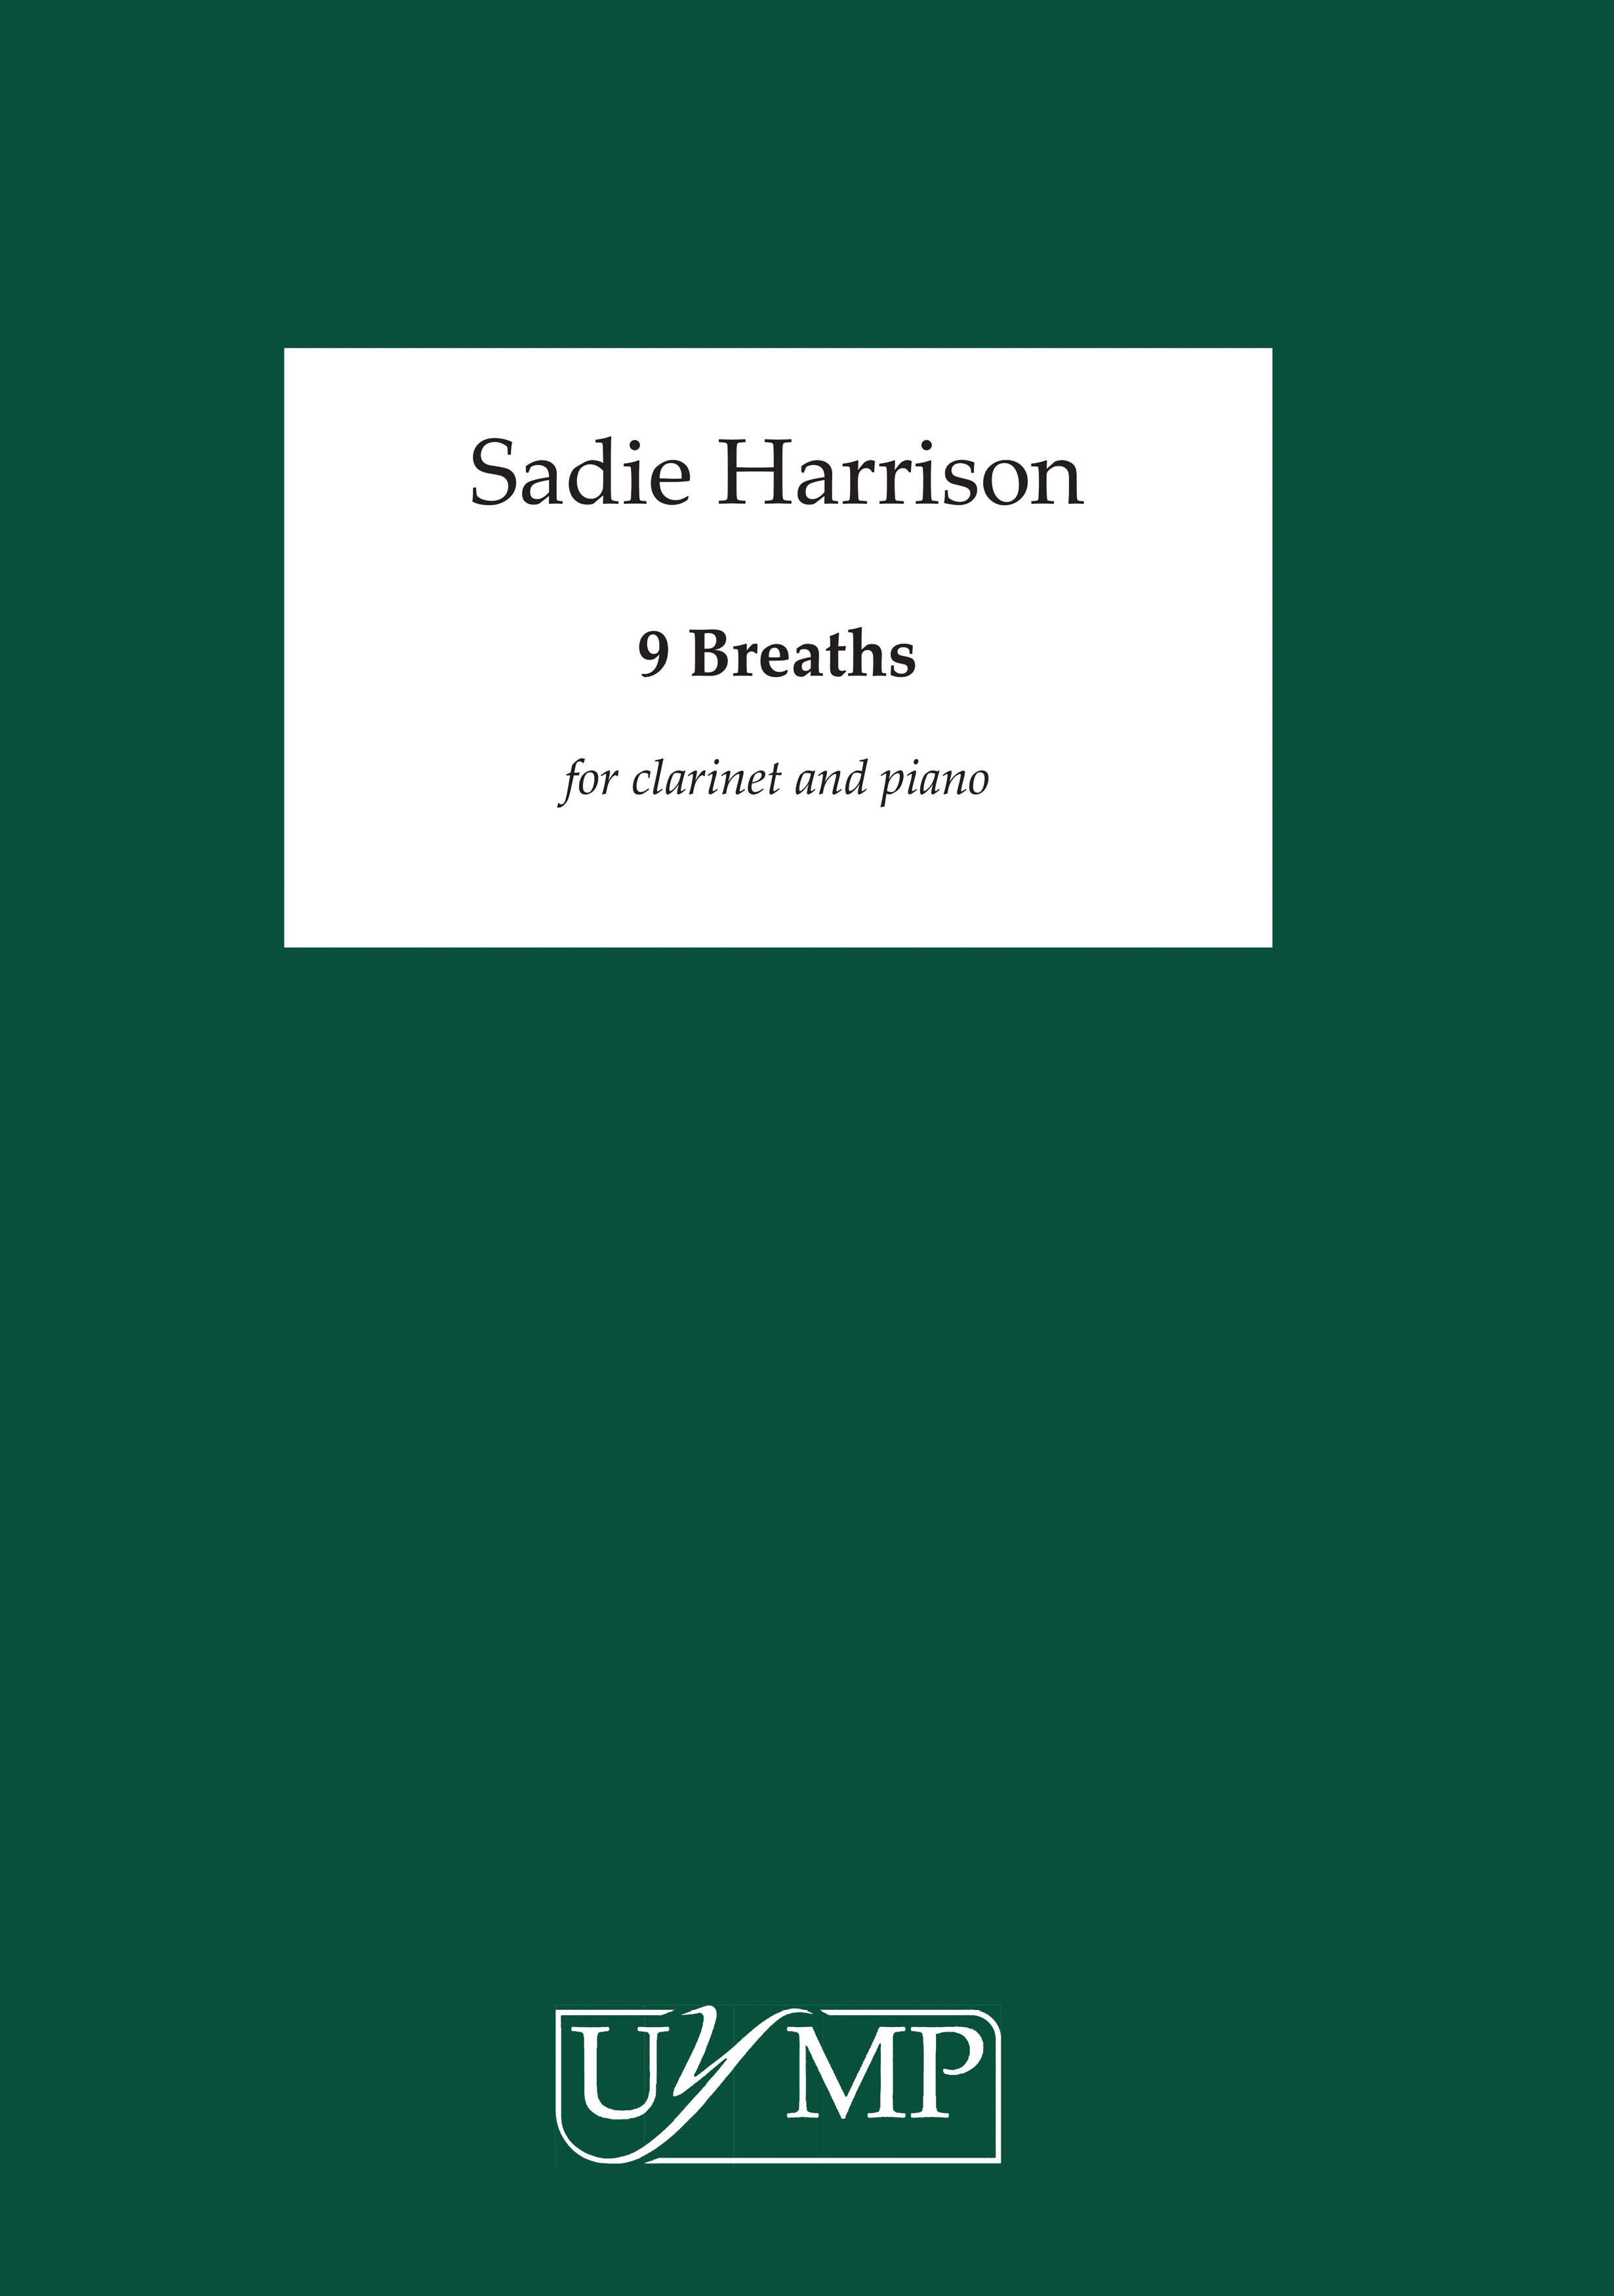 Sadie Harrison: 9 Breaths